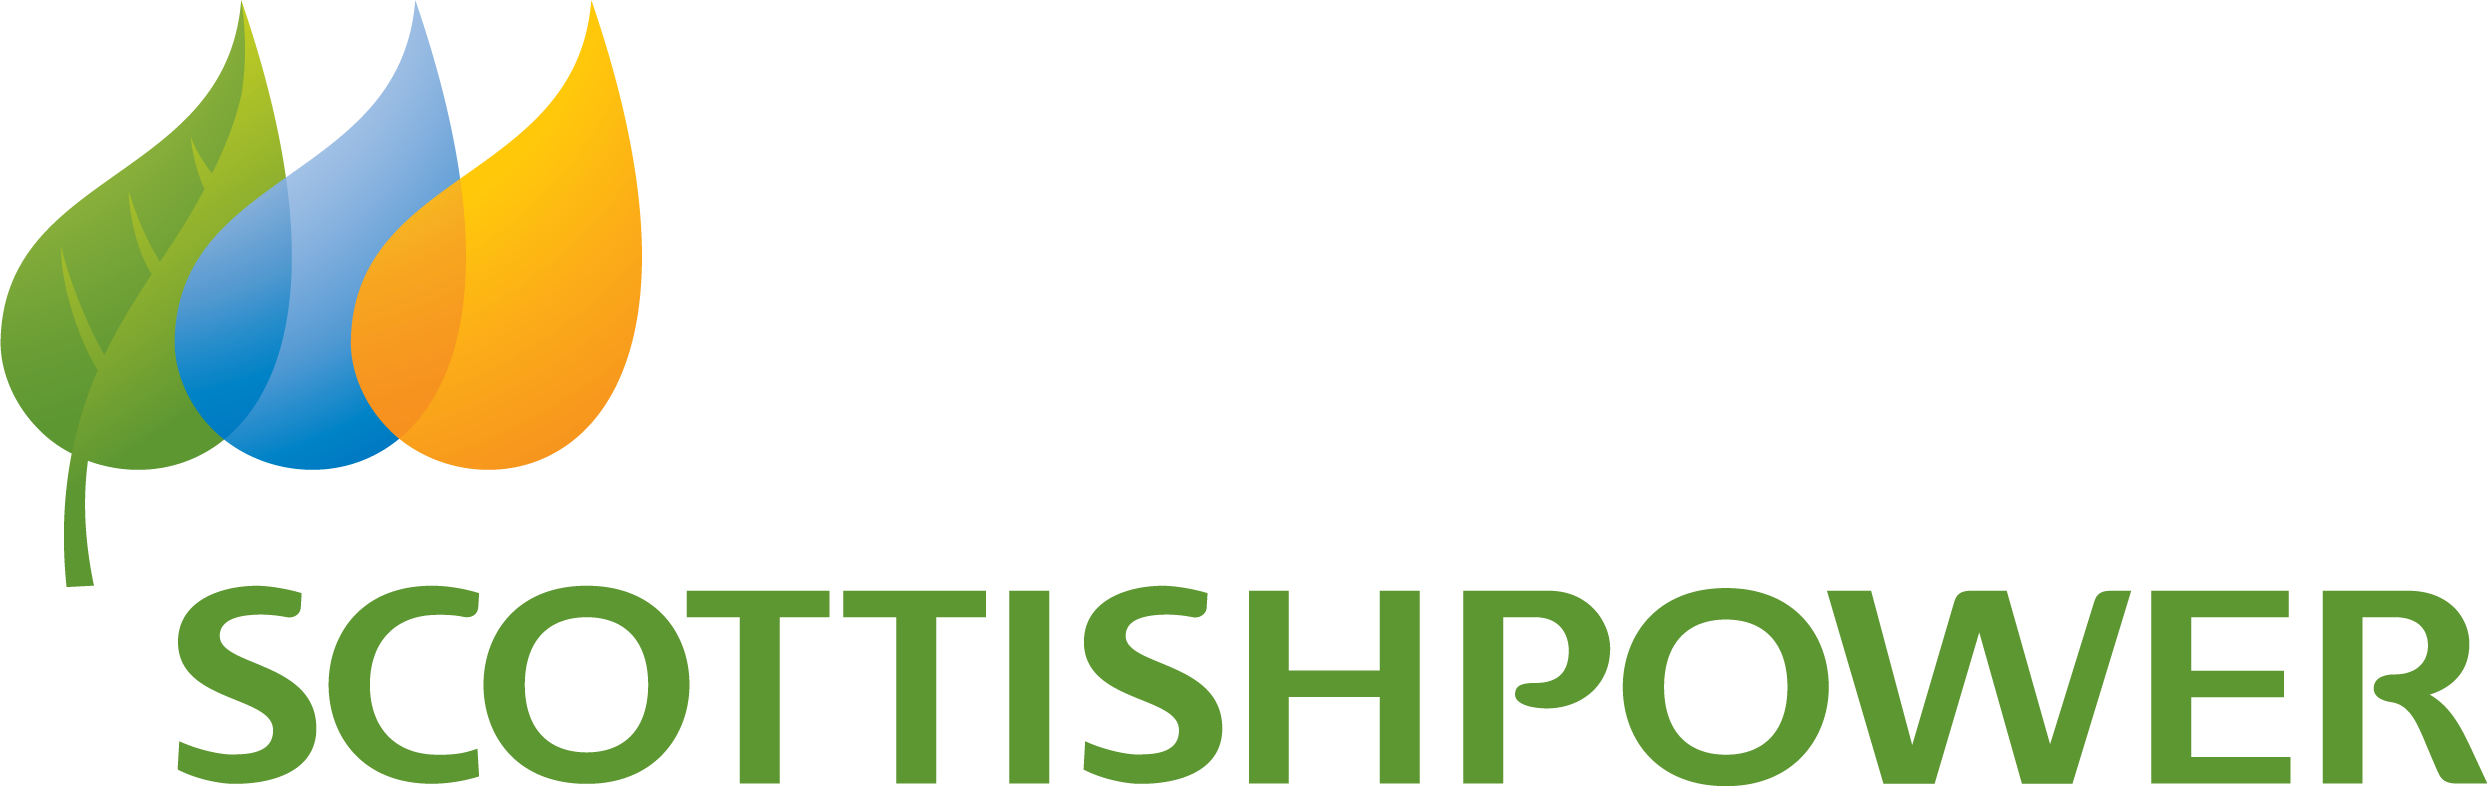 Scottish Power Logo (2487x786), Png Download